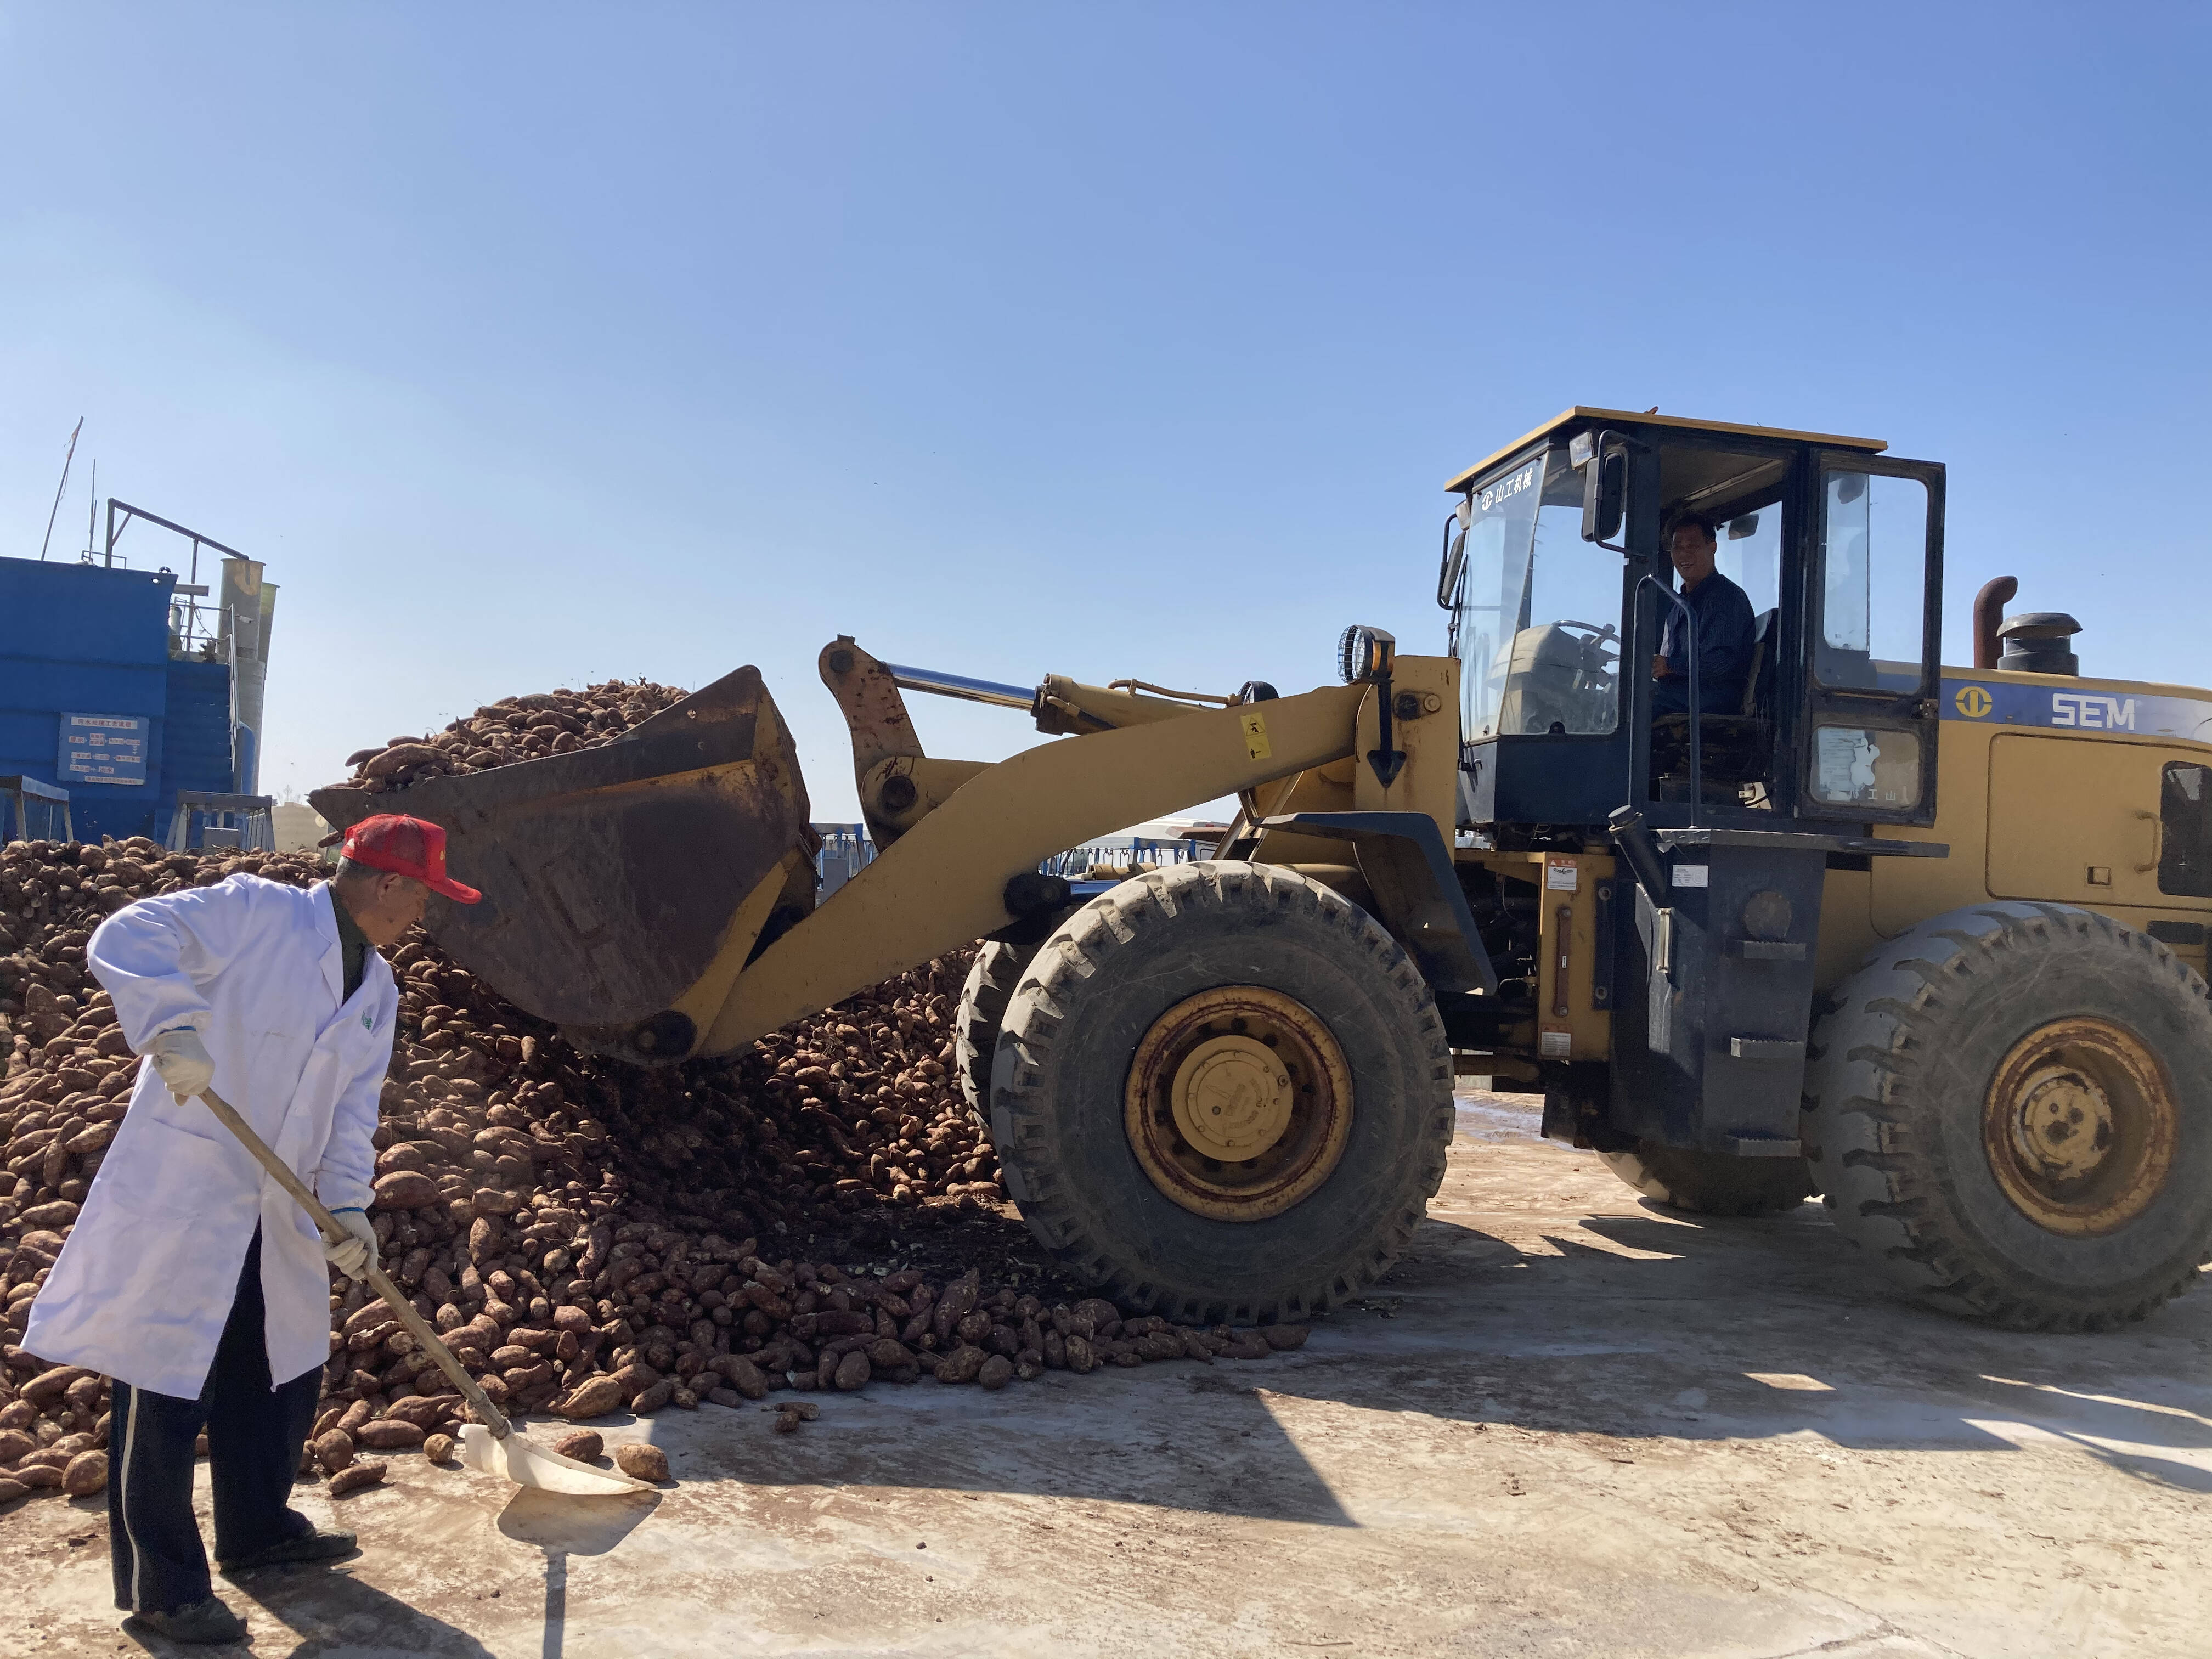 泊里镇青岛润泽农产品专业合作社把收购的红薯进行淀粉加工。记者 丁霞 摄